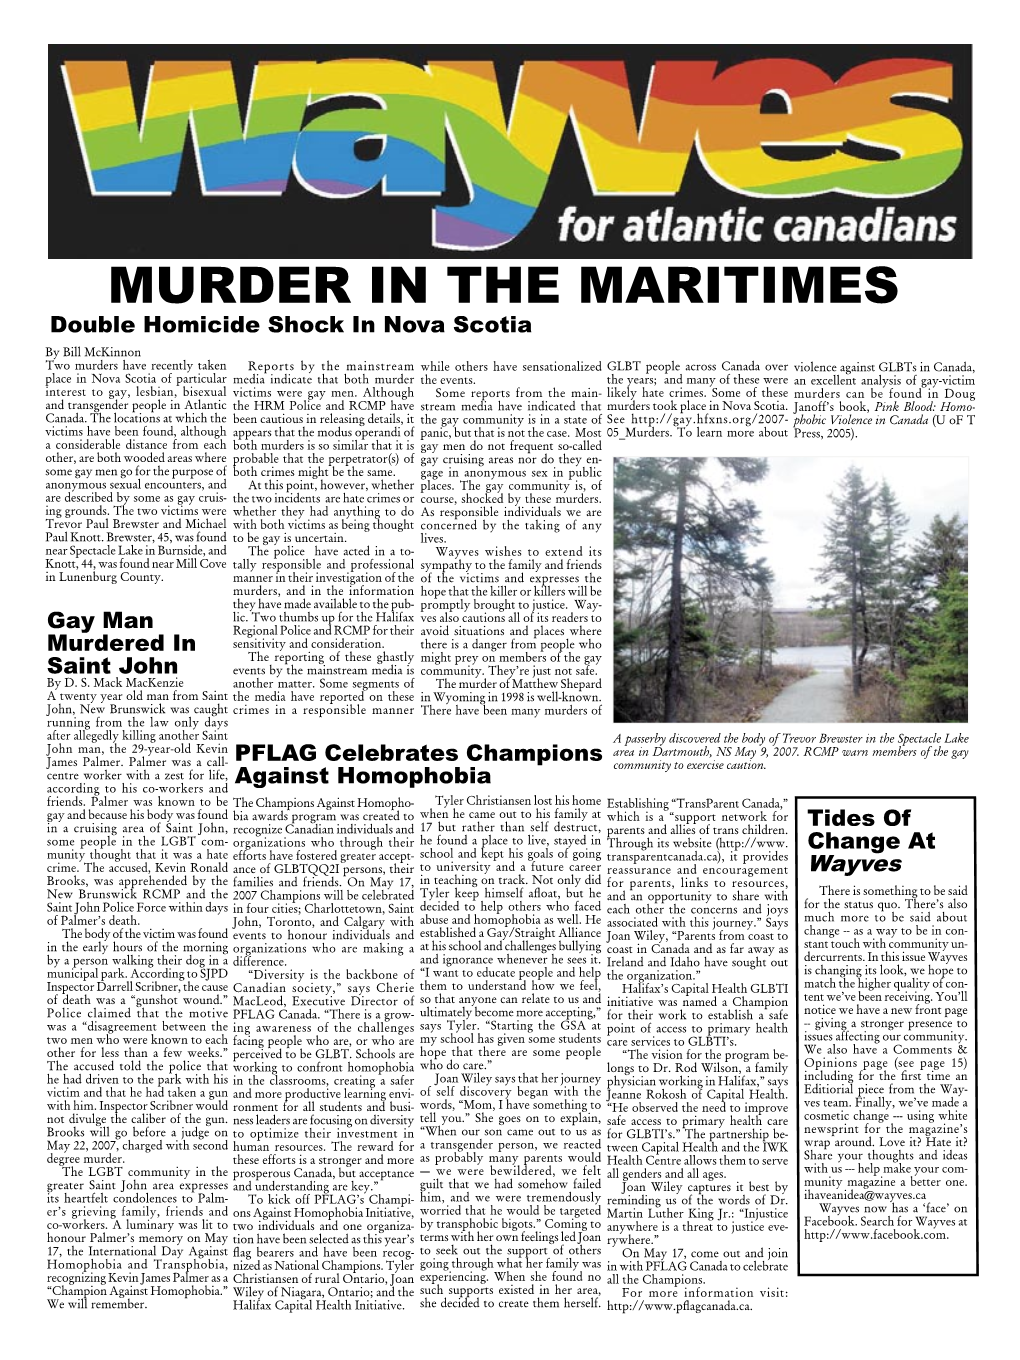 Murder in the Maritimes